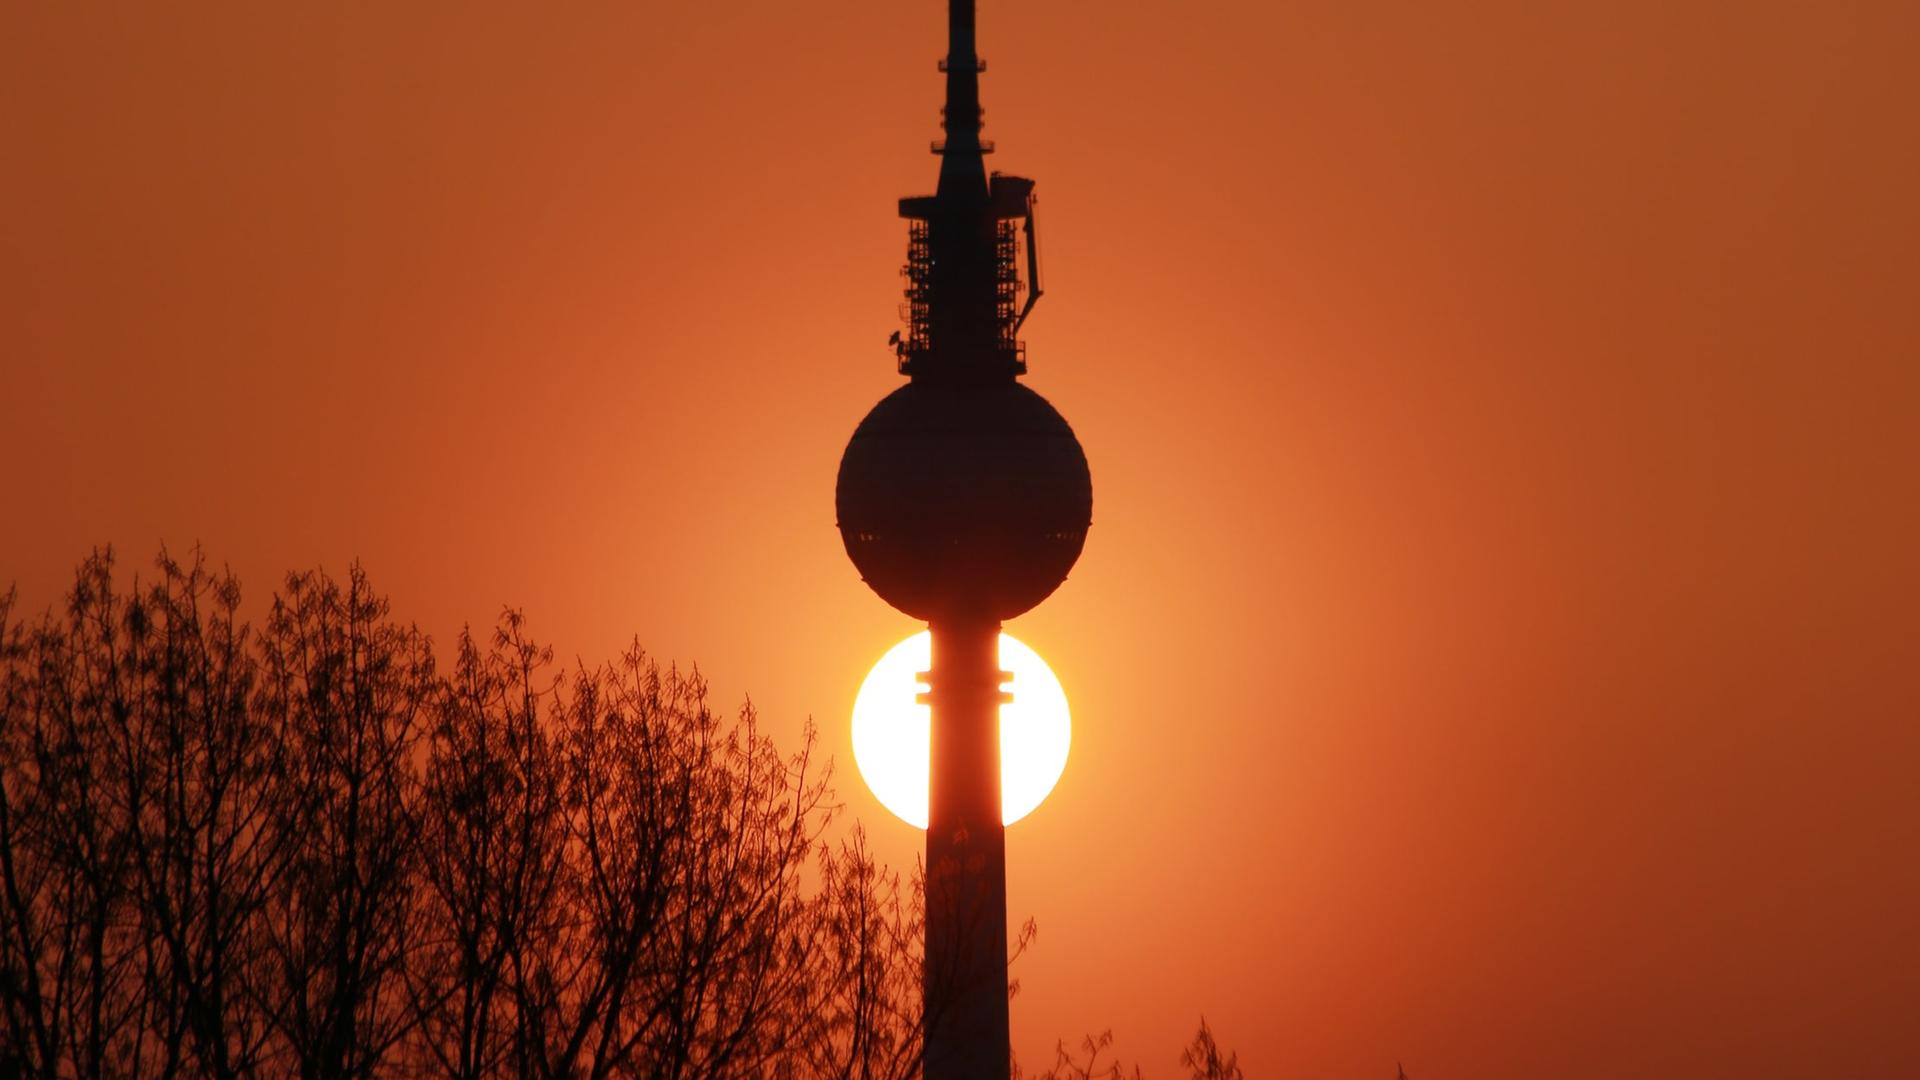 Der Berliner Fernsehturm vor der untergehenden Sonne, die tiefrot am Himmel steht.